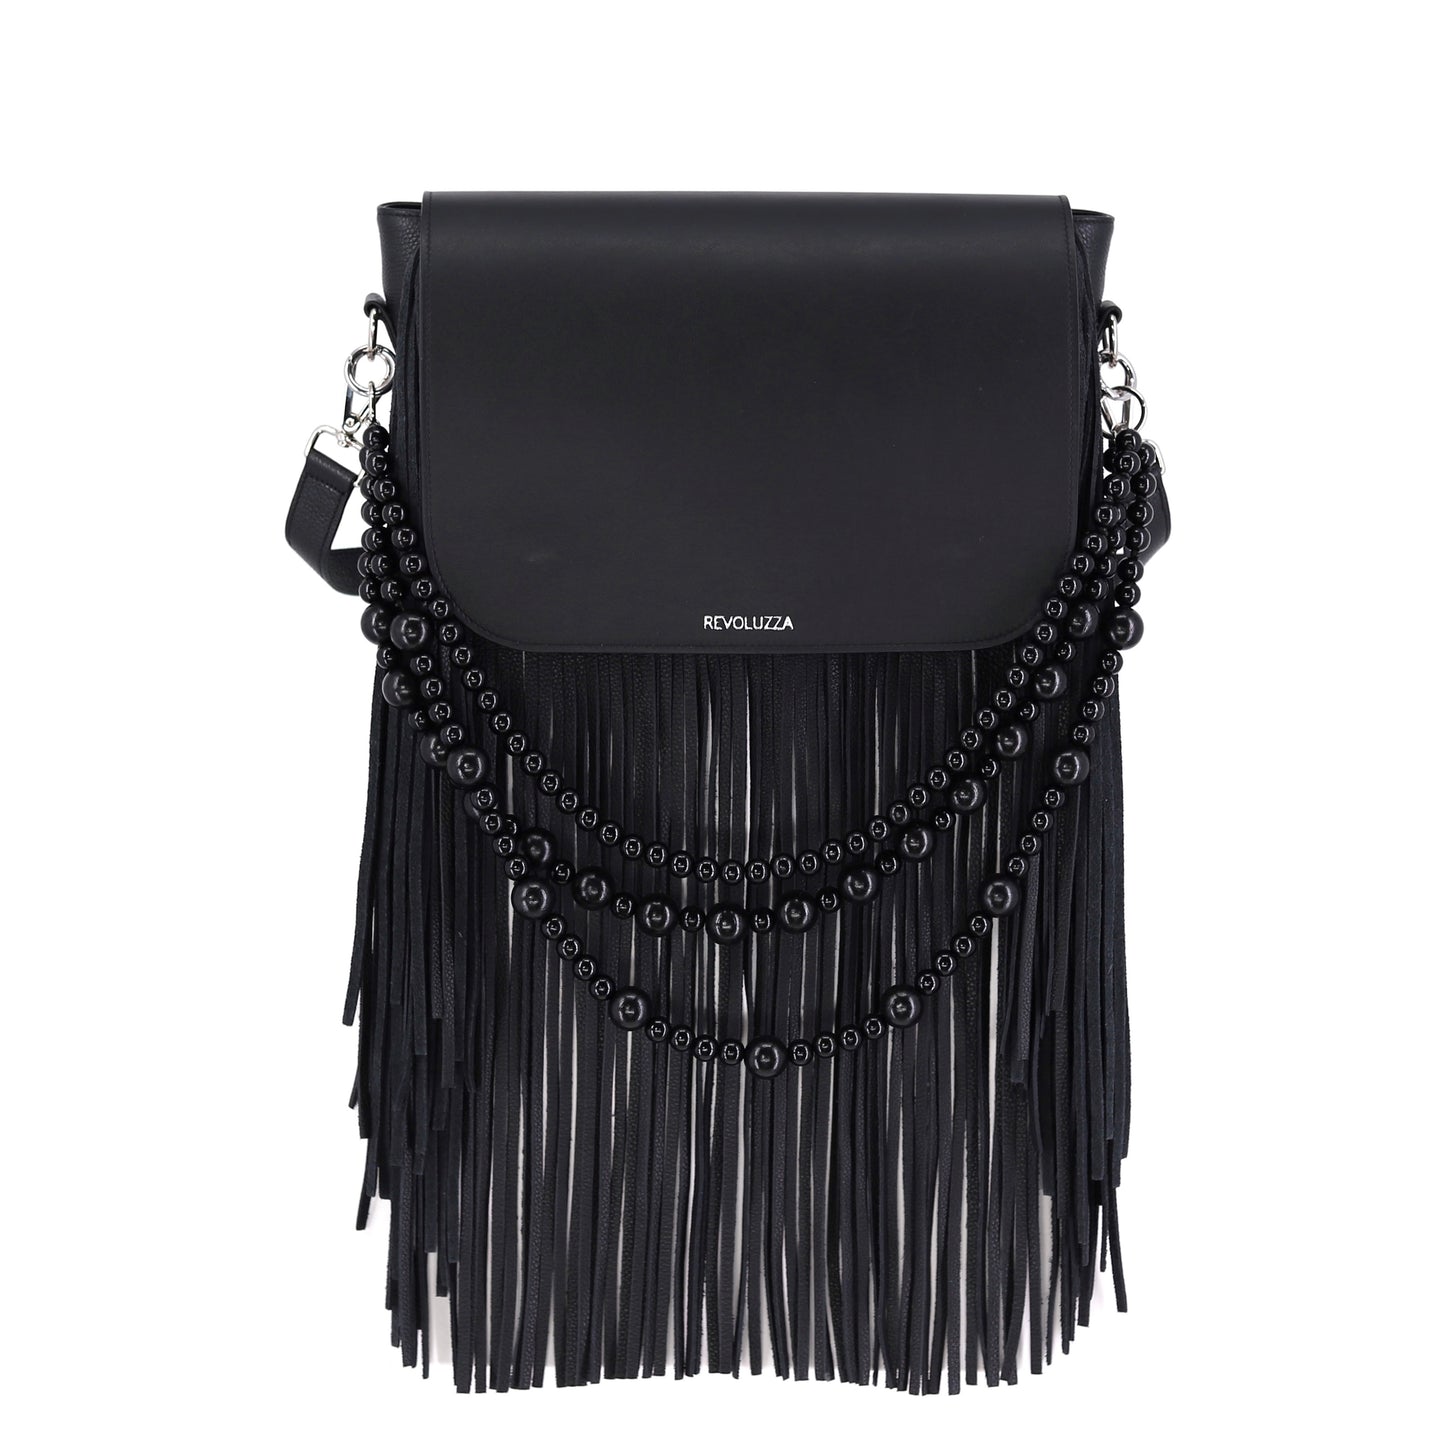 GABRIELLE Handtasche mit Fransen aus Leder in schwarz medium